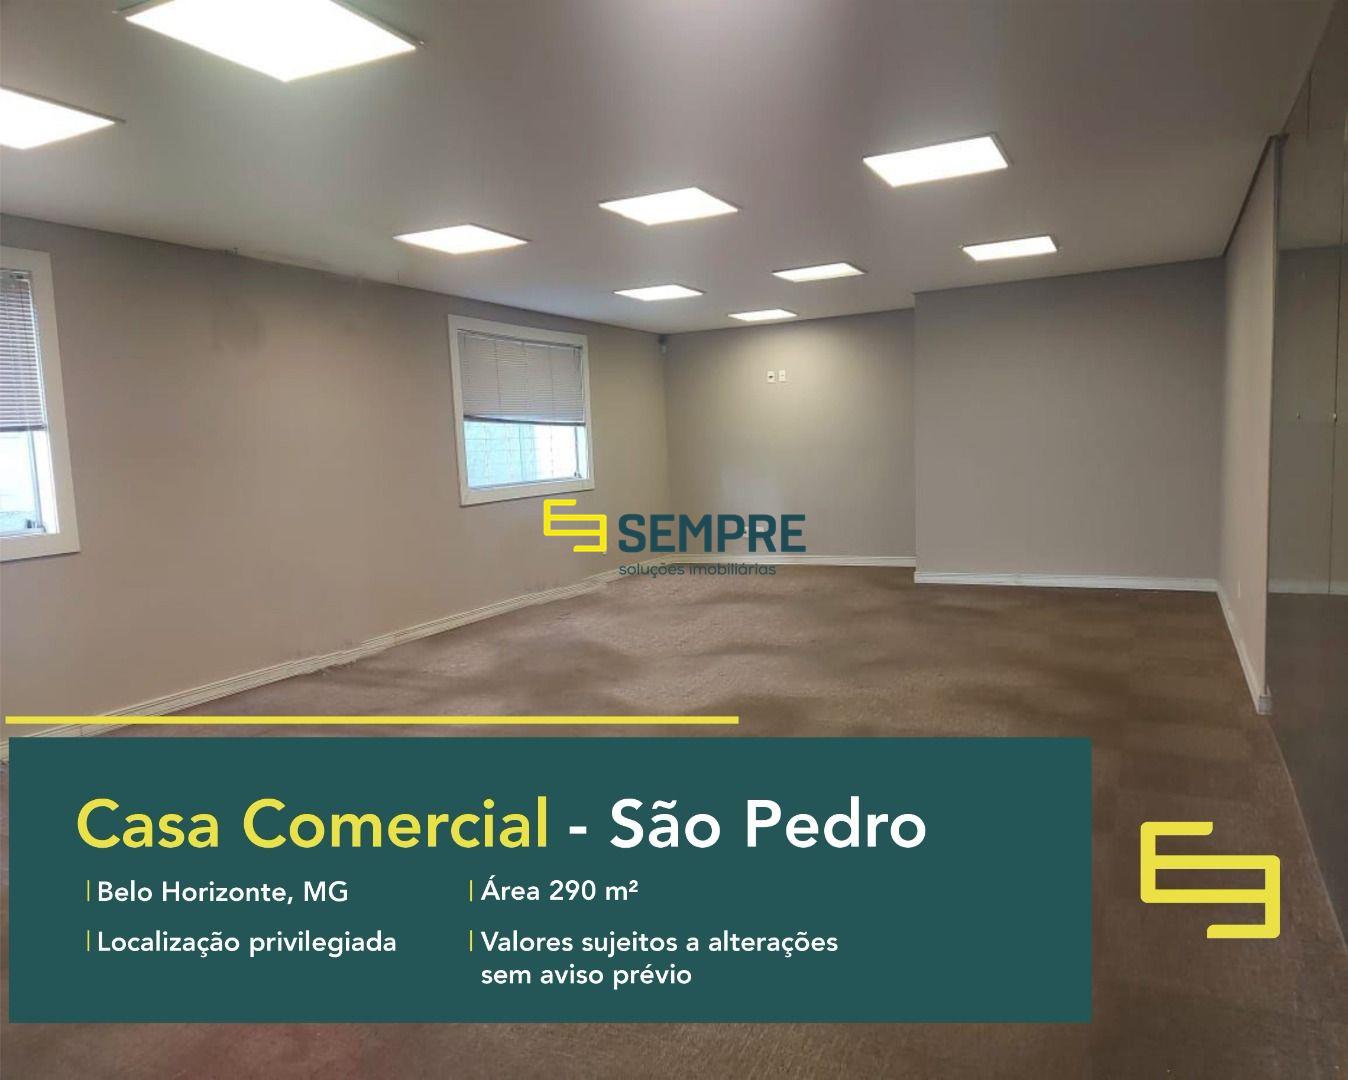 Casa comercial para alugar no São Pedro em Belo Horizonte, excelente localização. O estabelecimento comercial conta com área de 290 m².